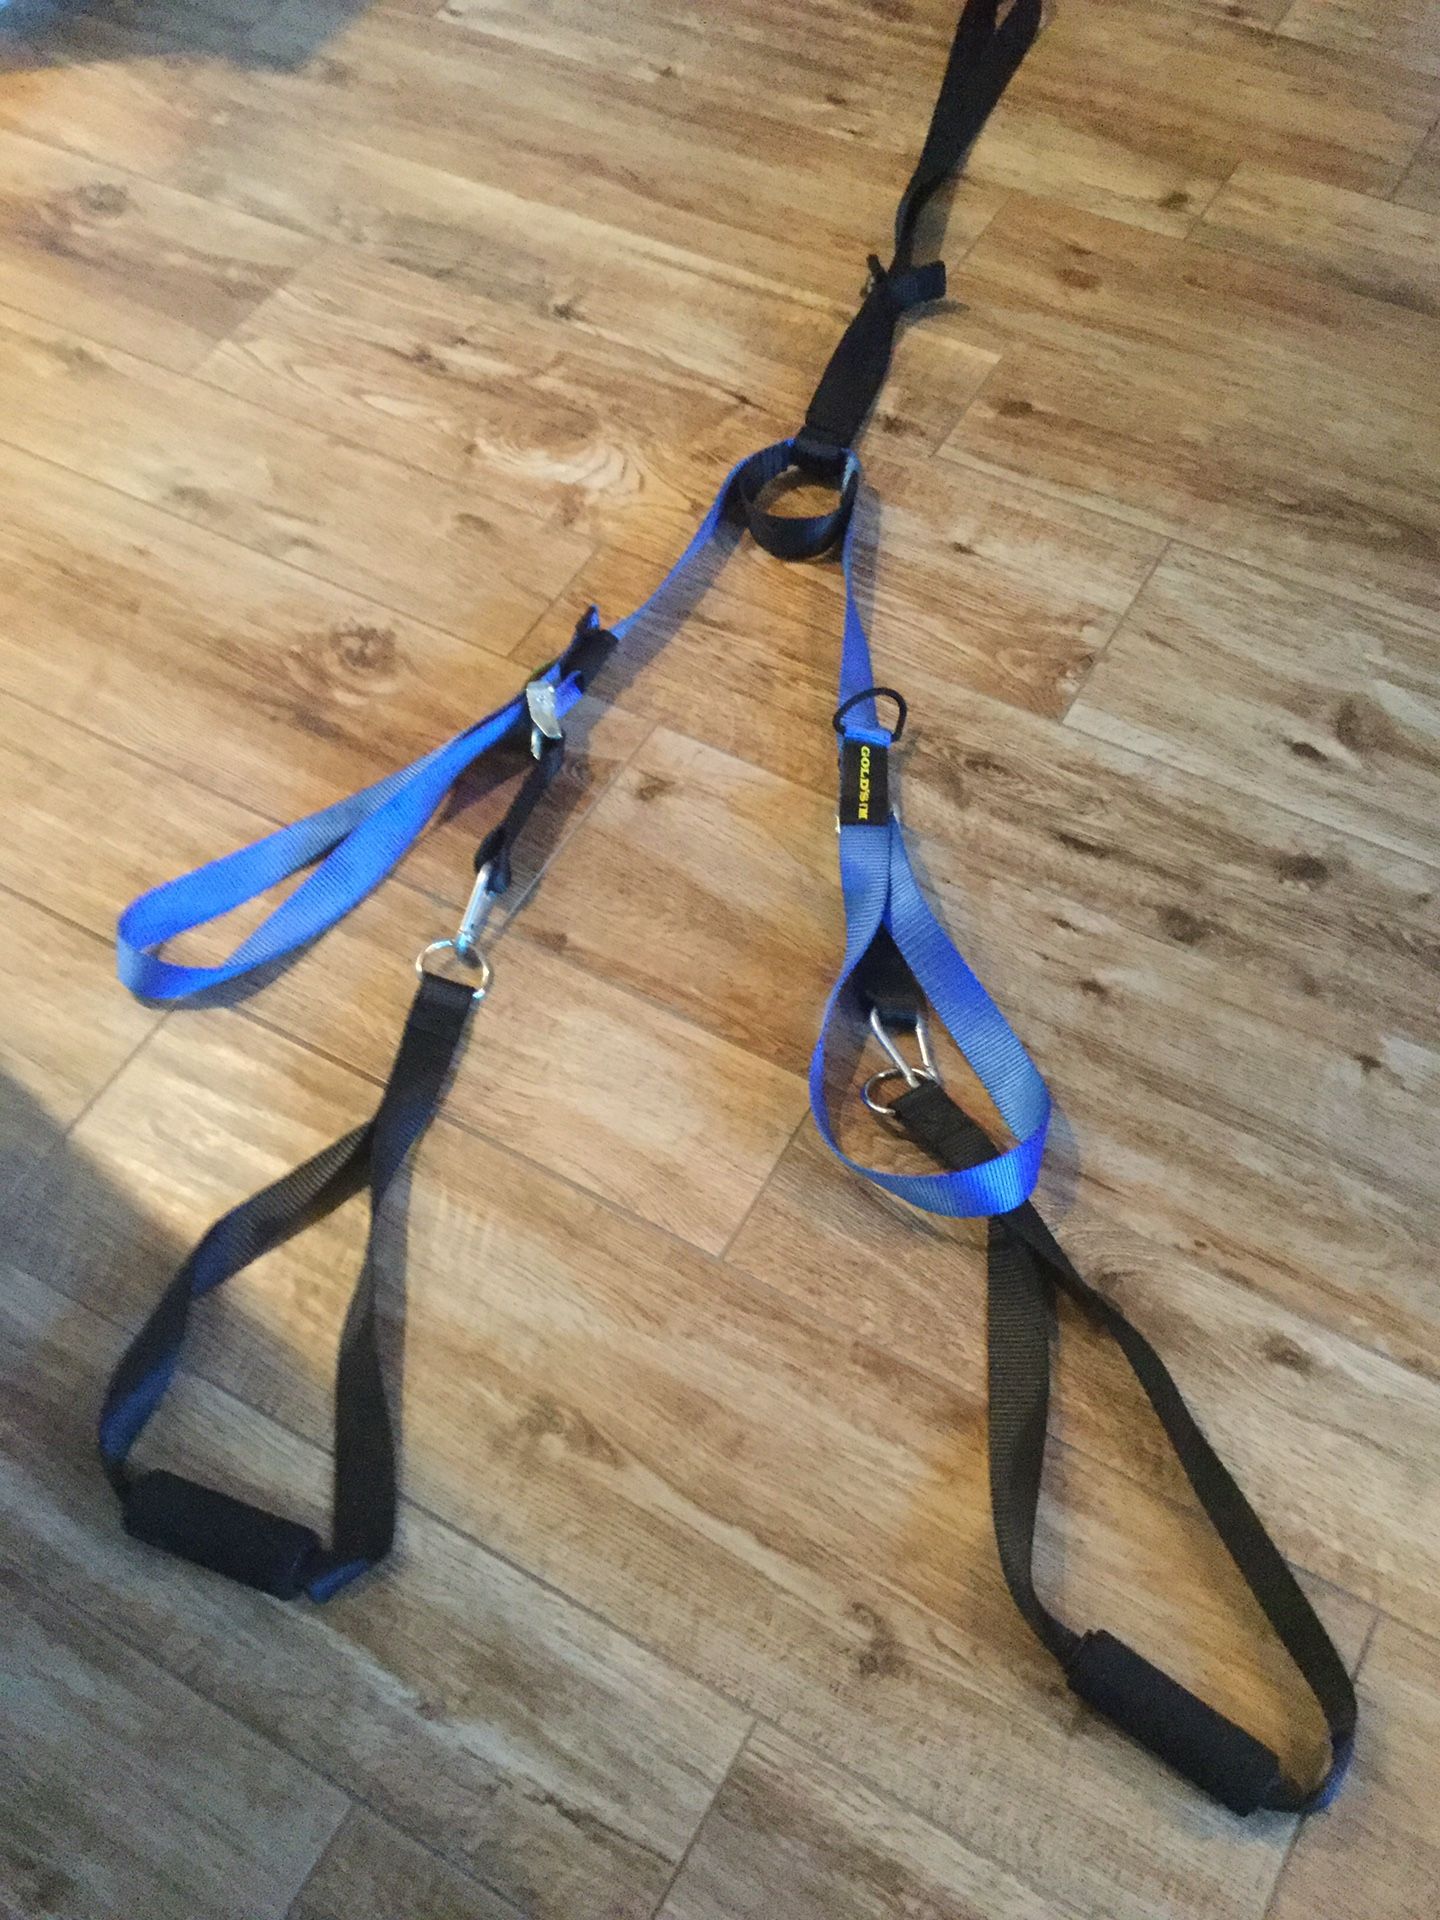 Suspension trainer resistant straps